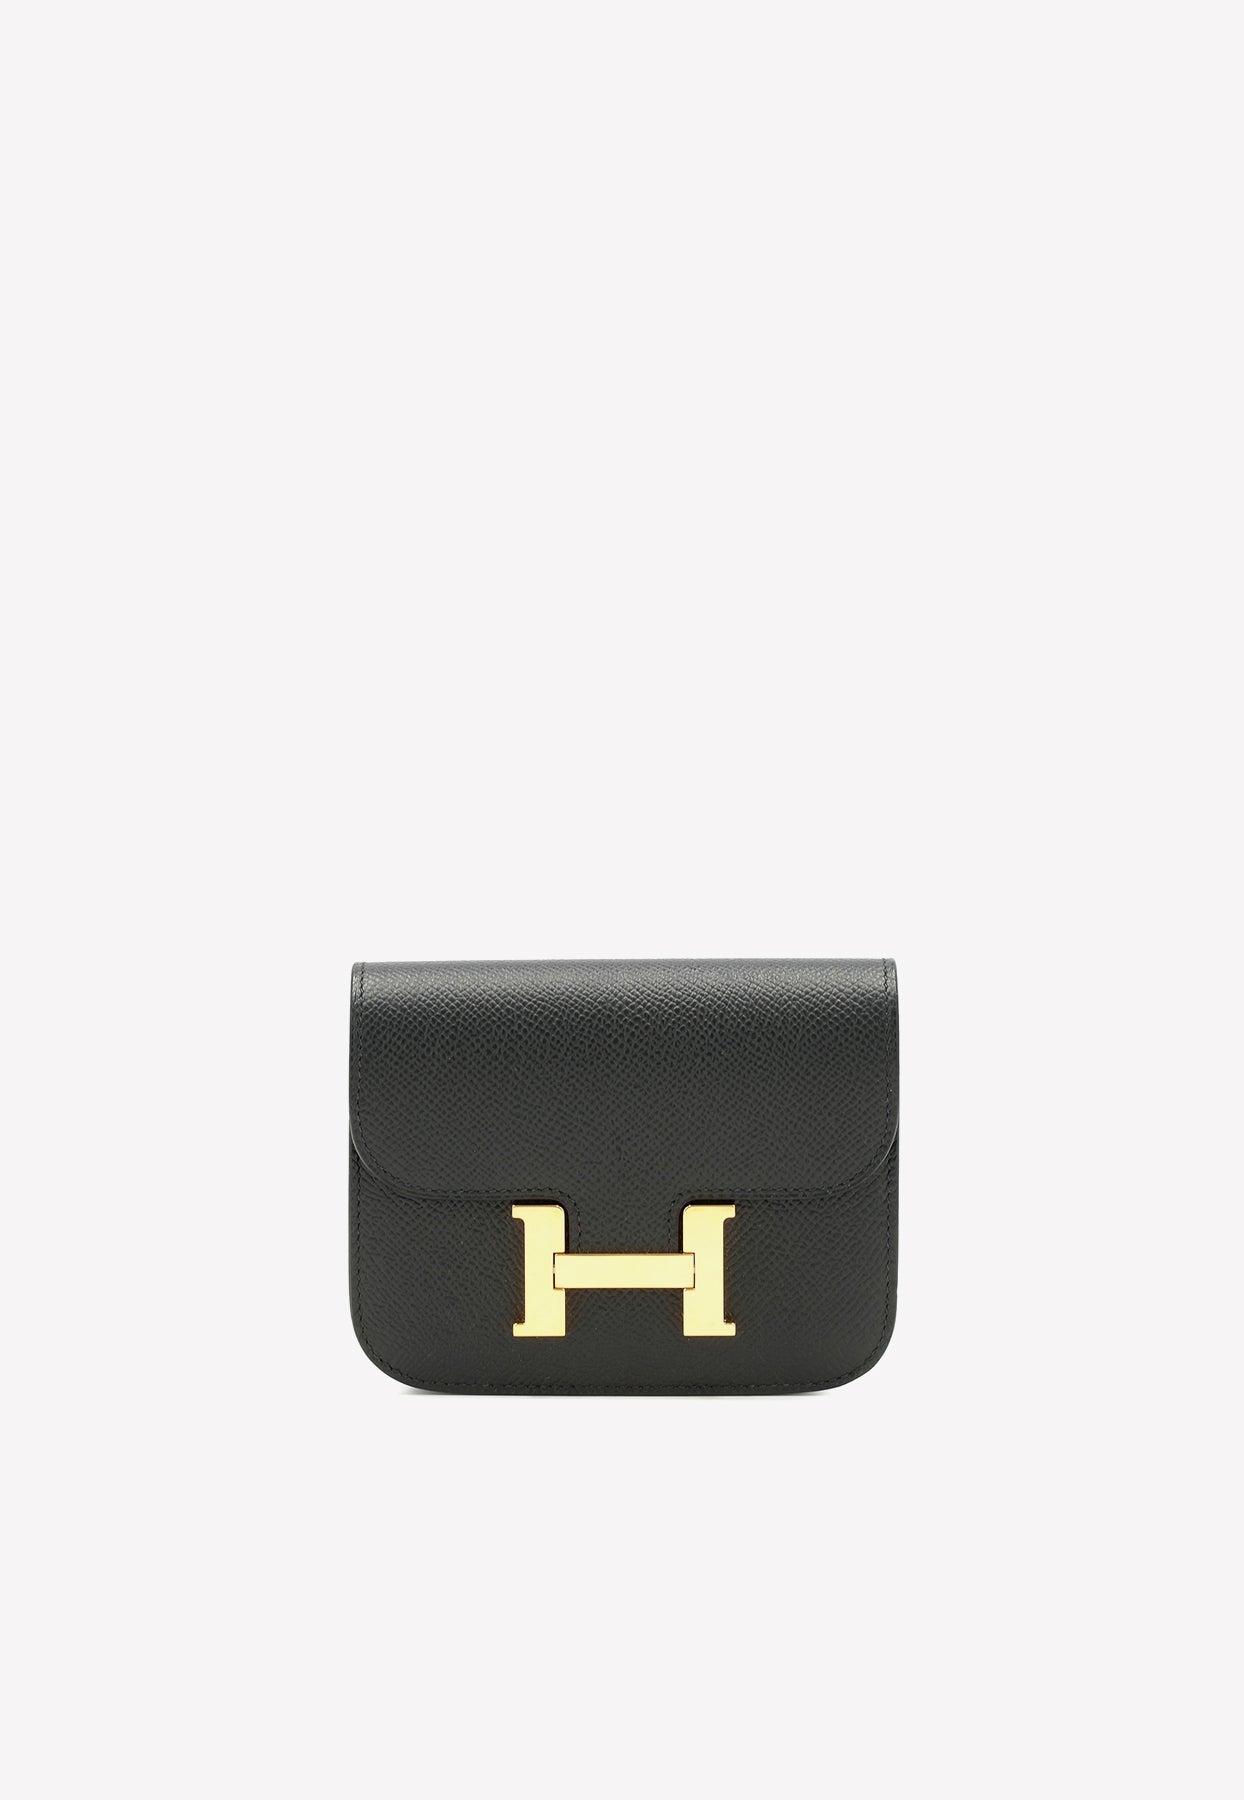 Hermes Roulis Slim Wallet Belt Bag Black Palladium Hardware For